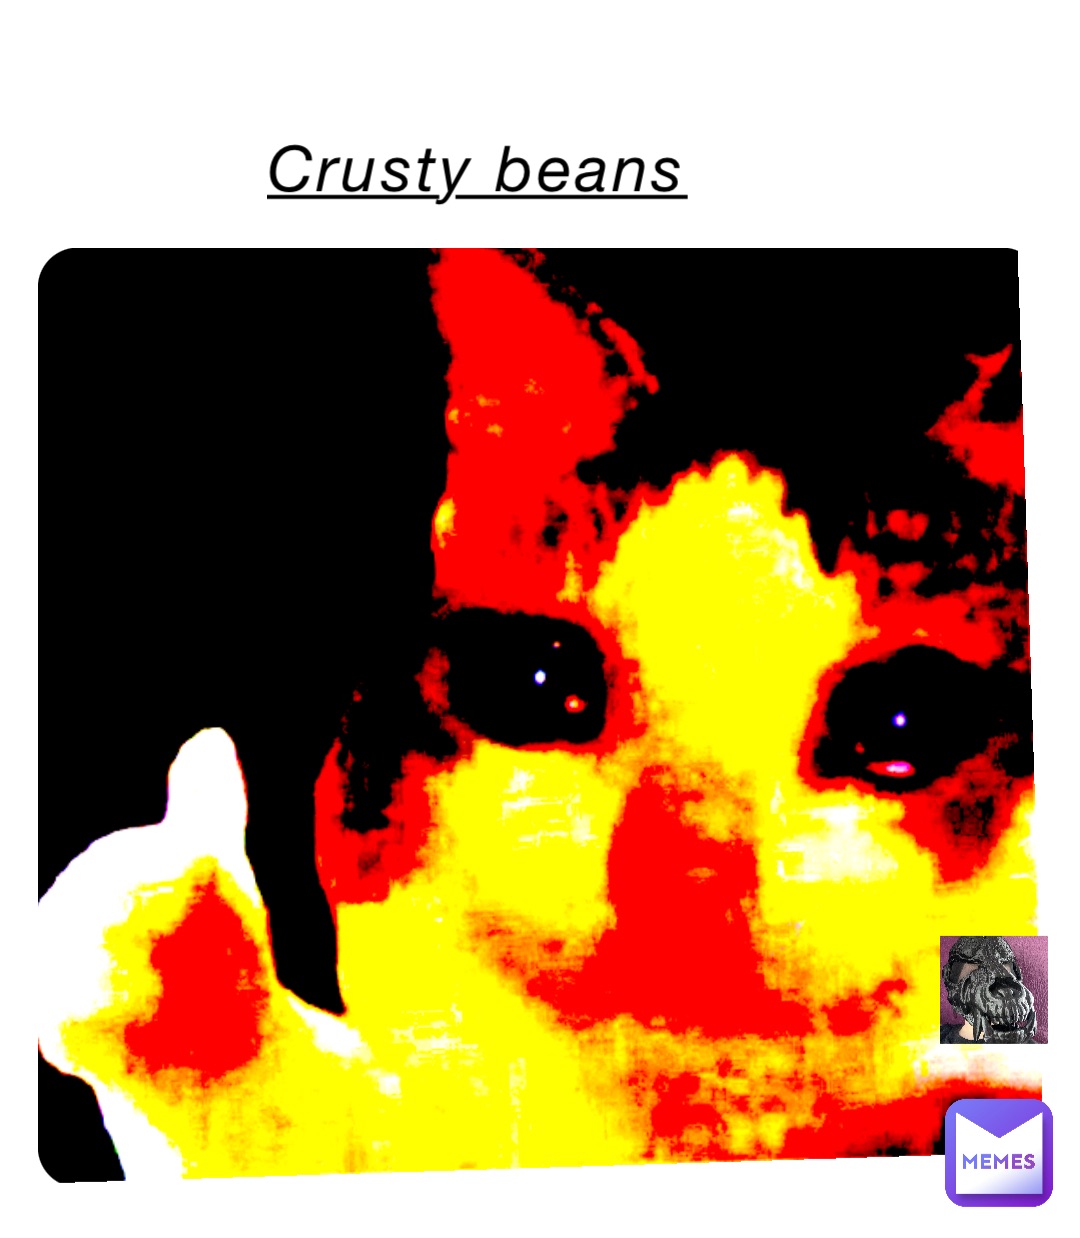 Crusty beans